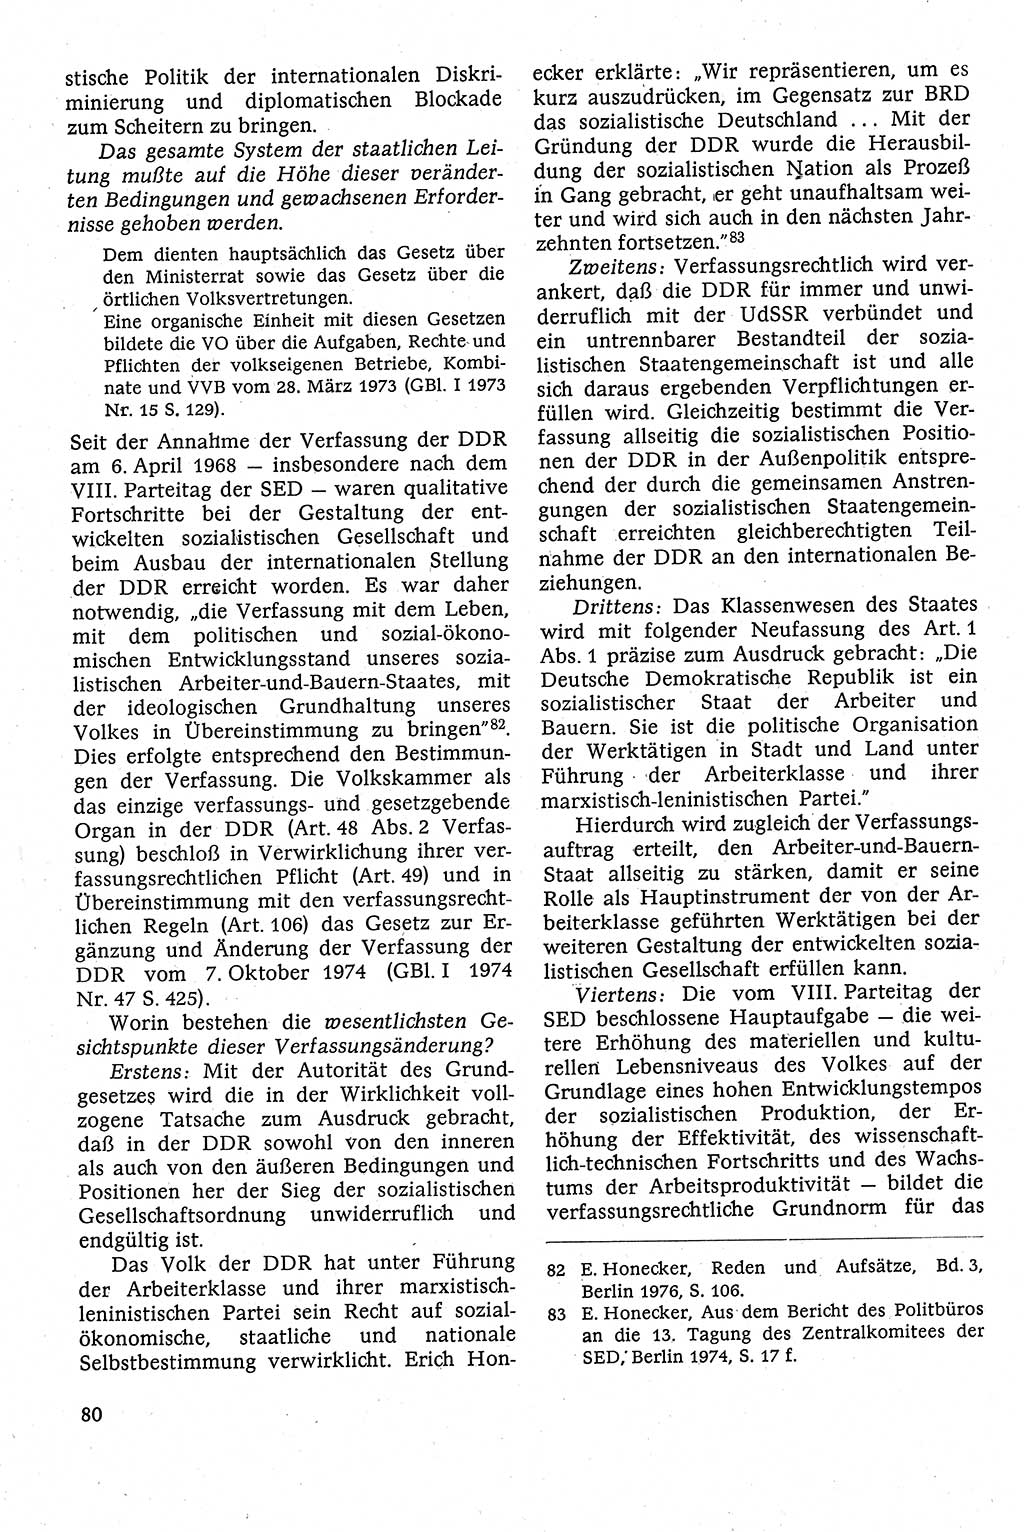 Staatsrecht der DDR [Deutsche Demokratische Republik (DDR)], Lehrbuch 1984, Seite 80 (St.-R. DDR Lb. 1984, S. 80)